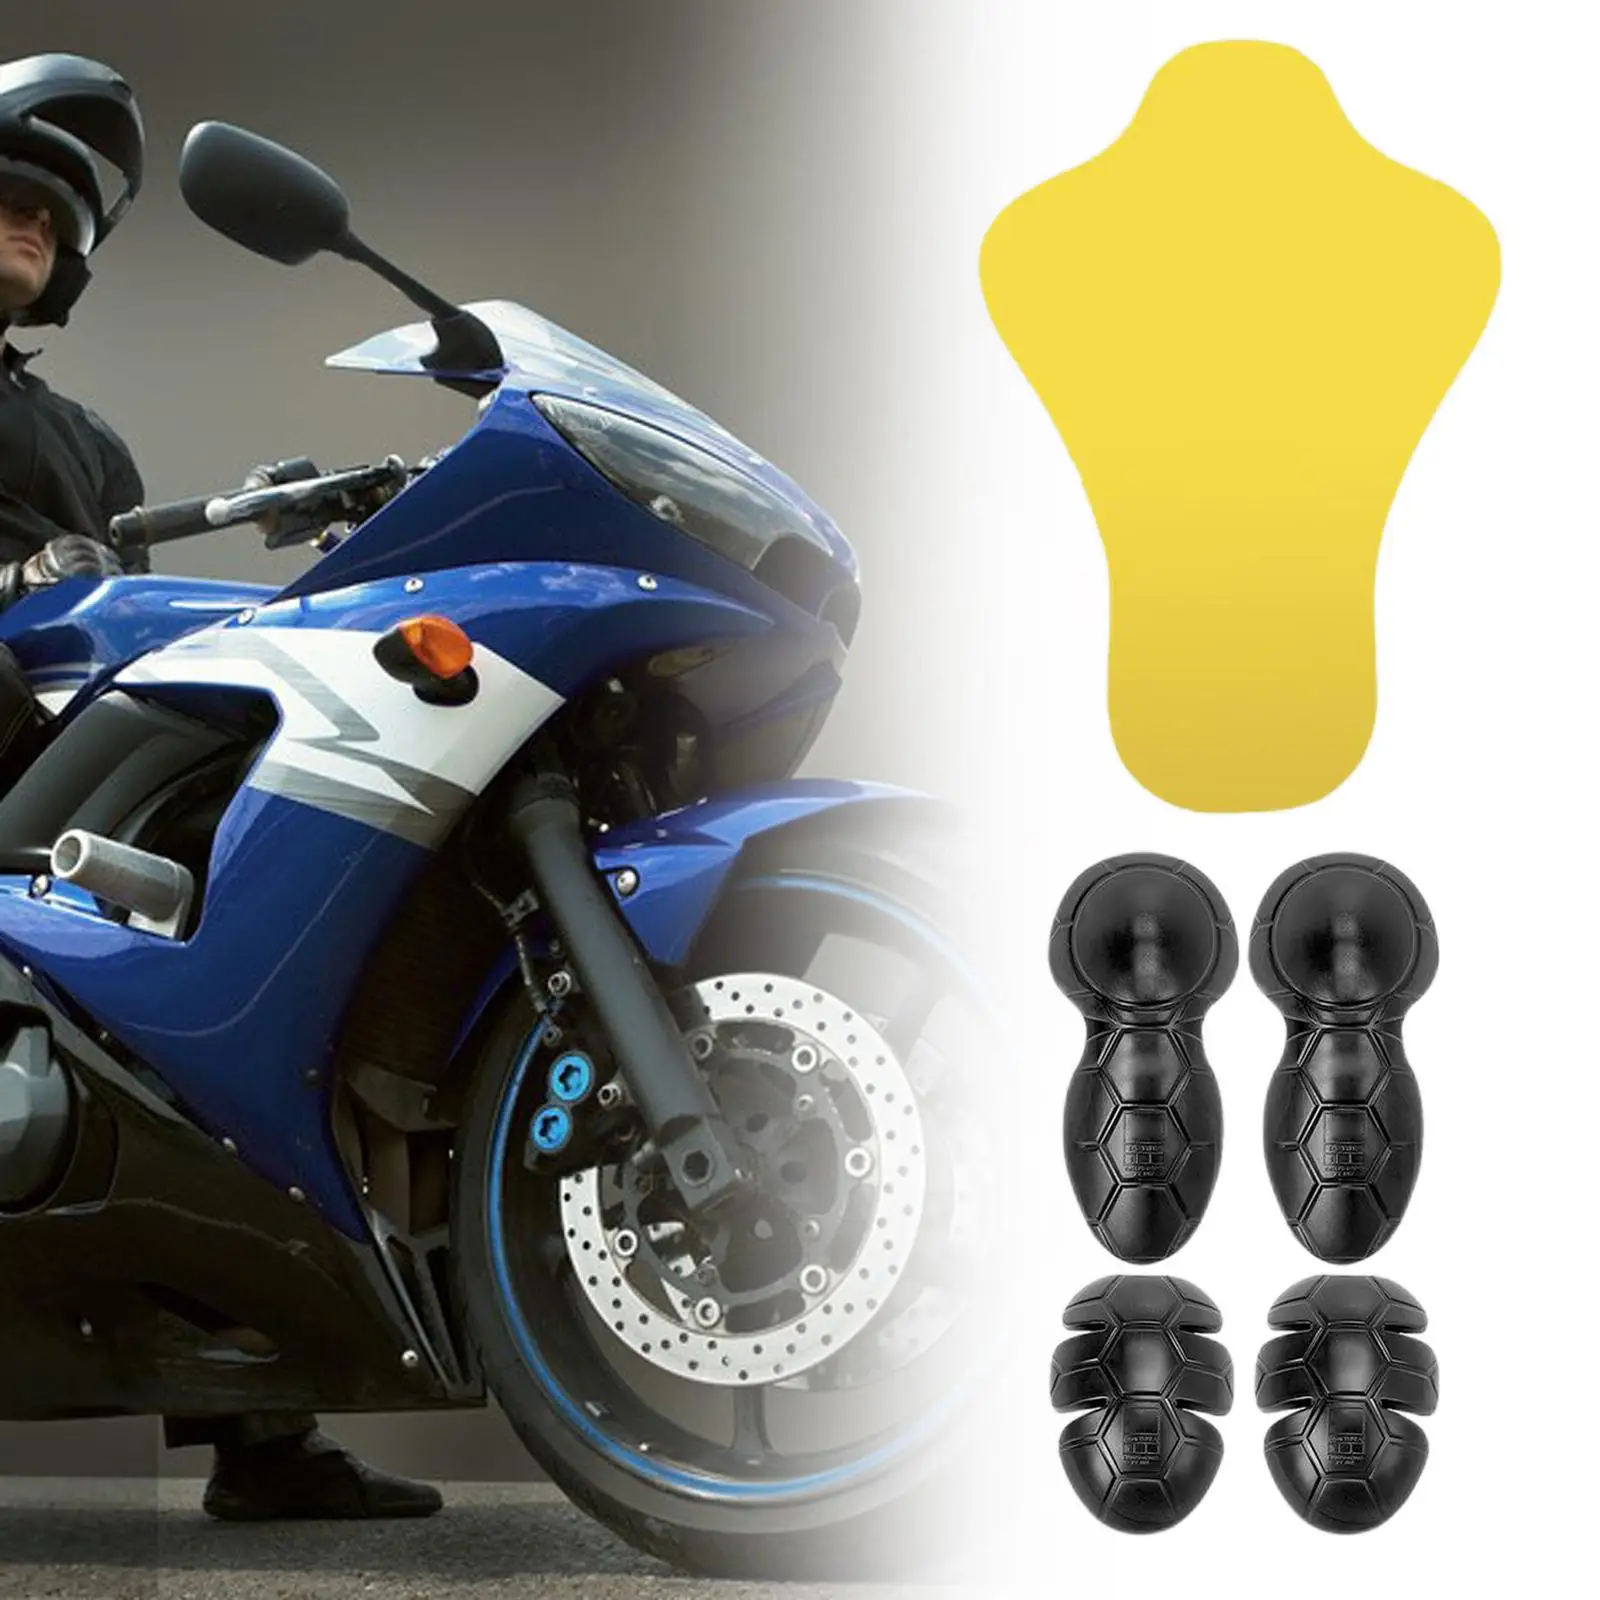 5x Motorcycle Jacket Insert Armor Protectors Set Motorbike Protection Armour Insert Protector Set Motorcycle Biker Equipment